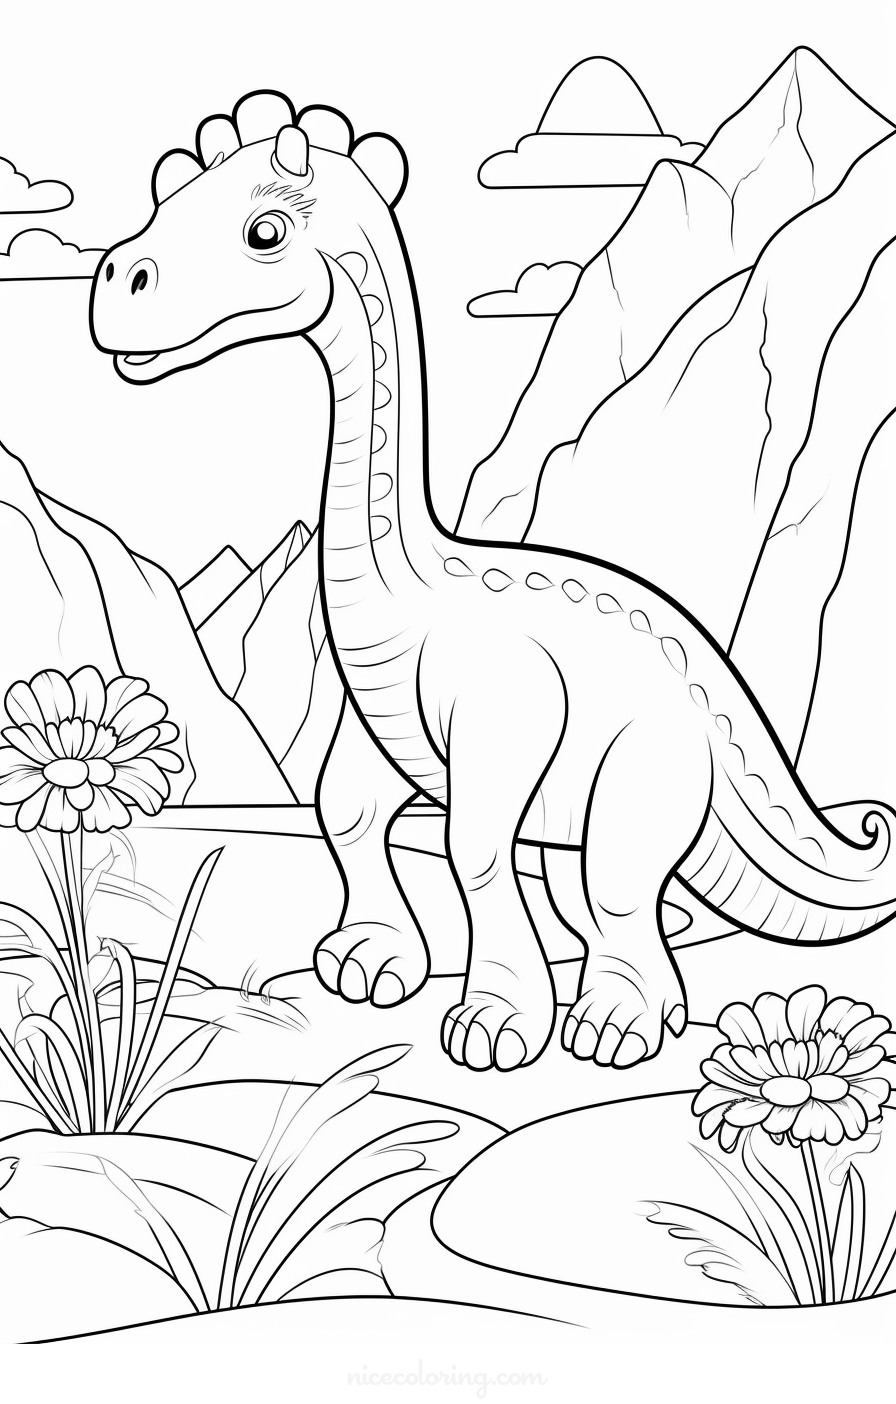 प्रागैतिहासिक परिदृश्य में T-rex और Triceratops का रंगने वाला दृश्य